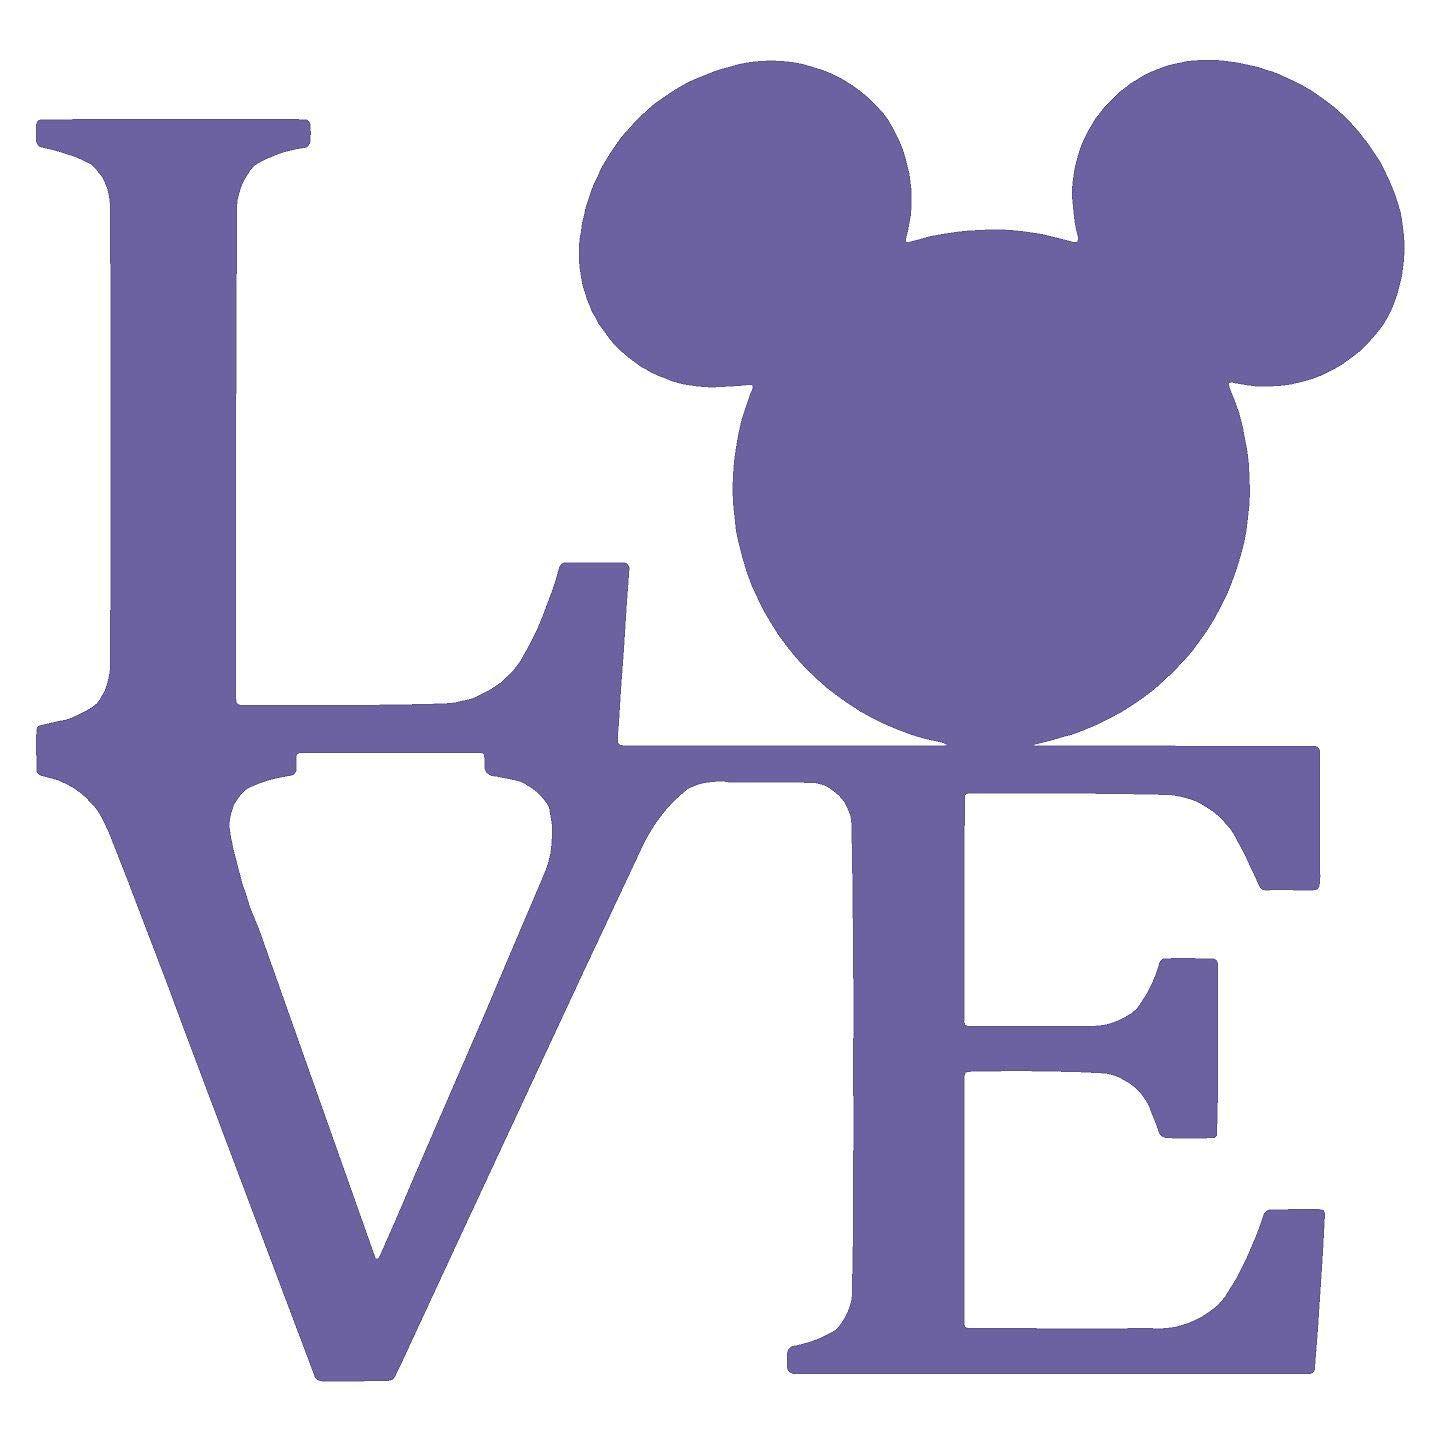 Disney Mickey Mouse Ears Logo - Amazon.com: Mickey Mouse Love Ears Logo - Disney Character - Auto ...